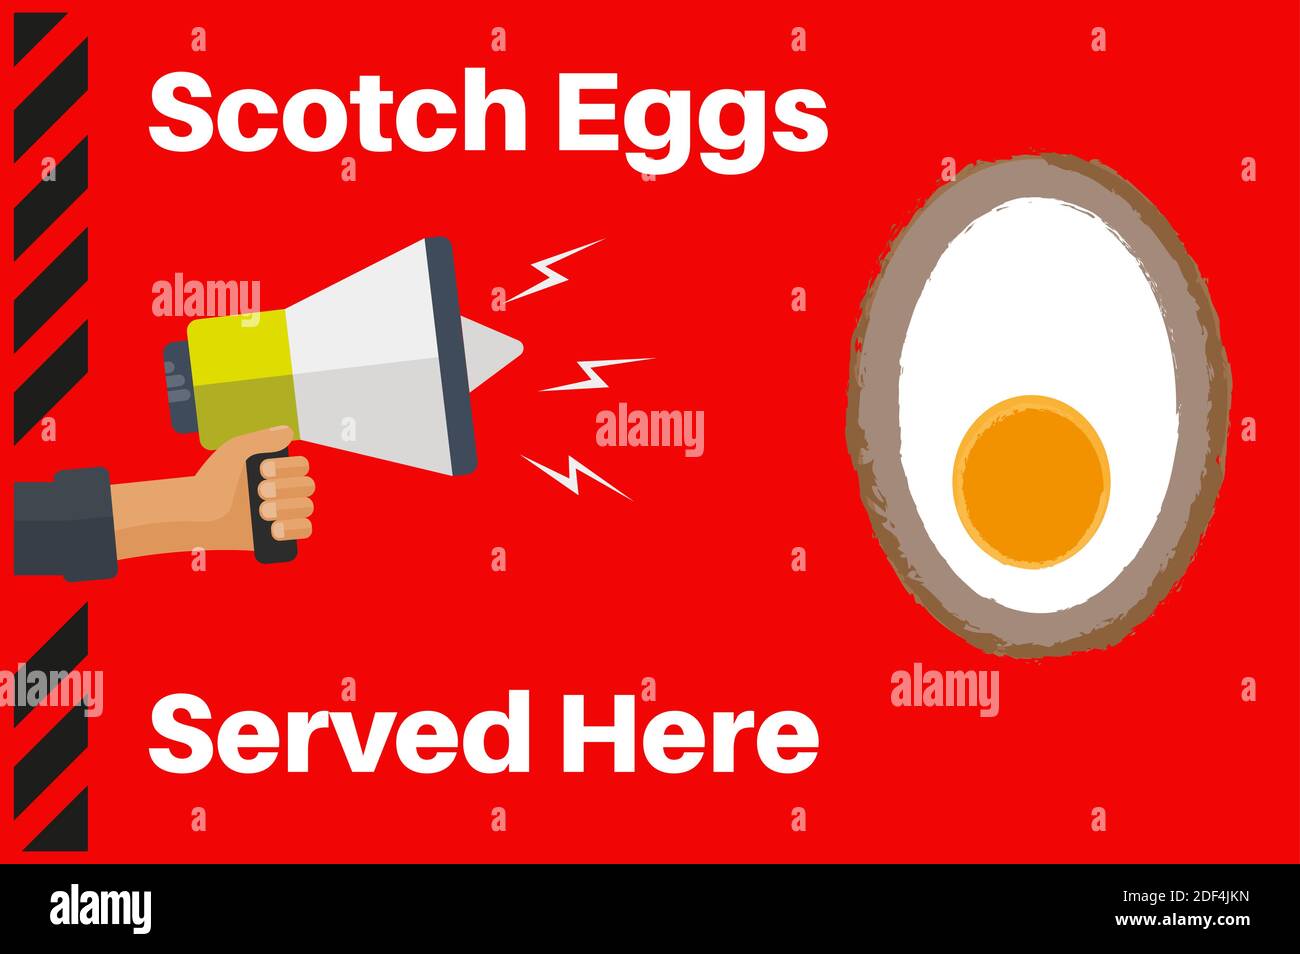 Scotch Eier serviert hier Vektor-Illustration auf einem roten Hintergrund Stock Vektor